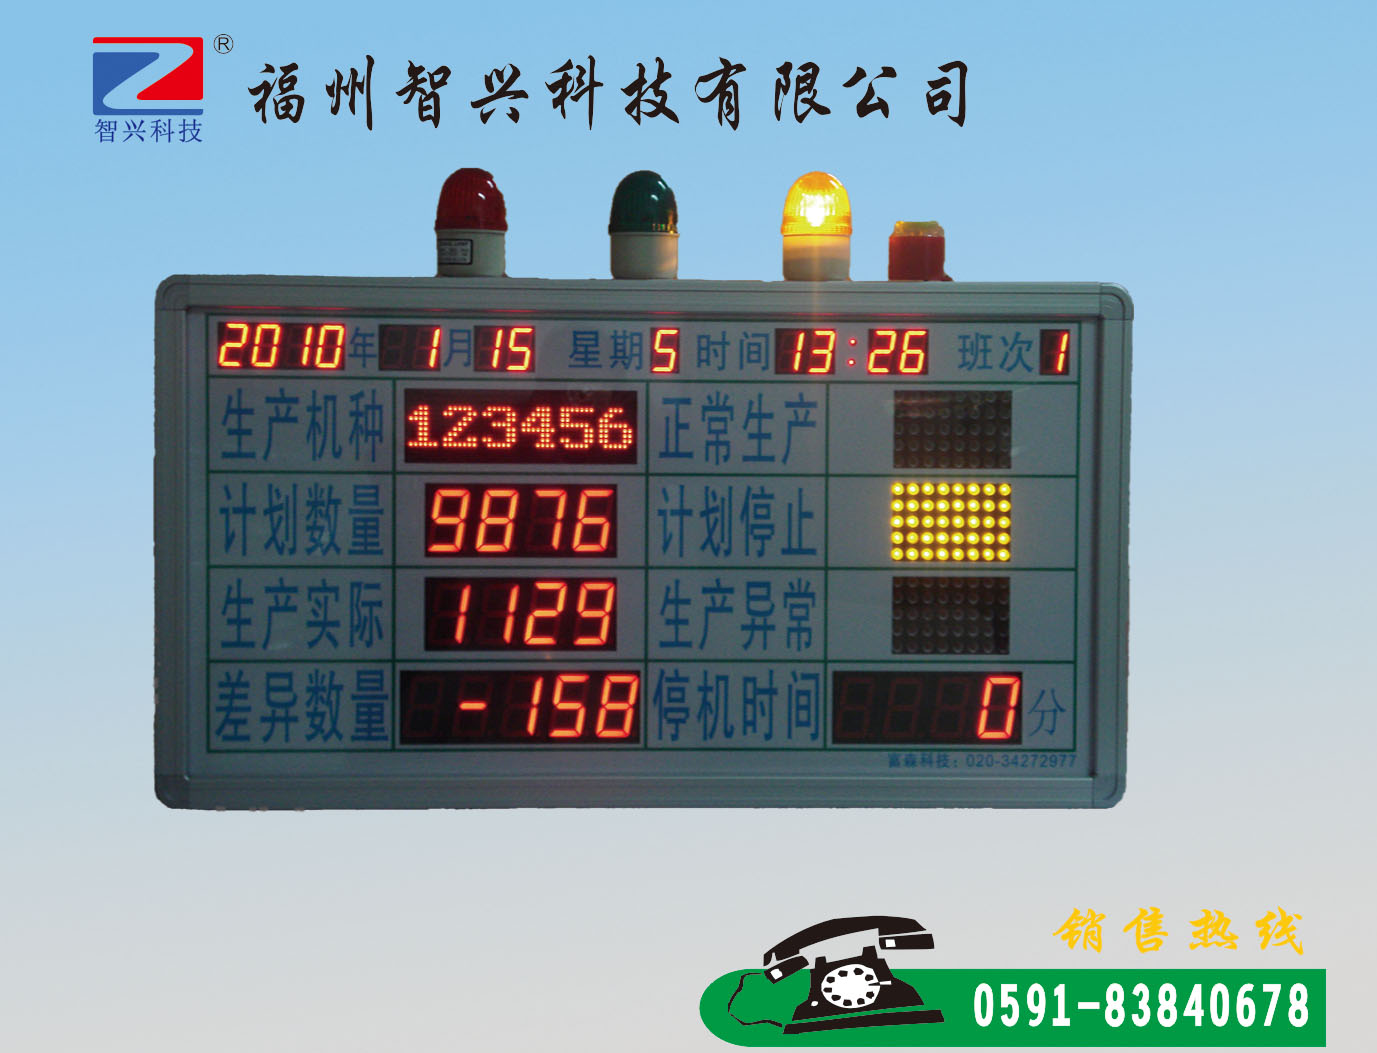 哪里可以买到耐用的LED求助系统 中国求助系统